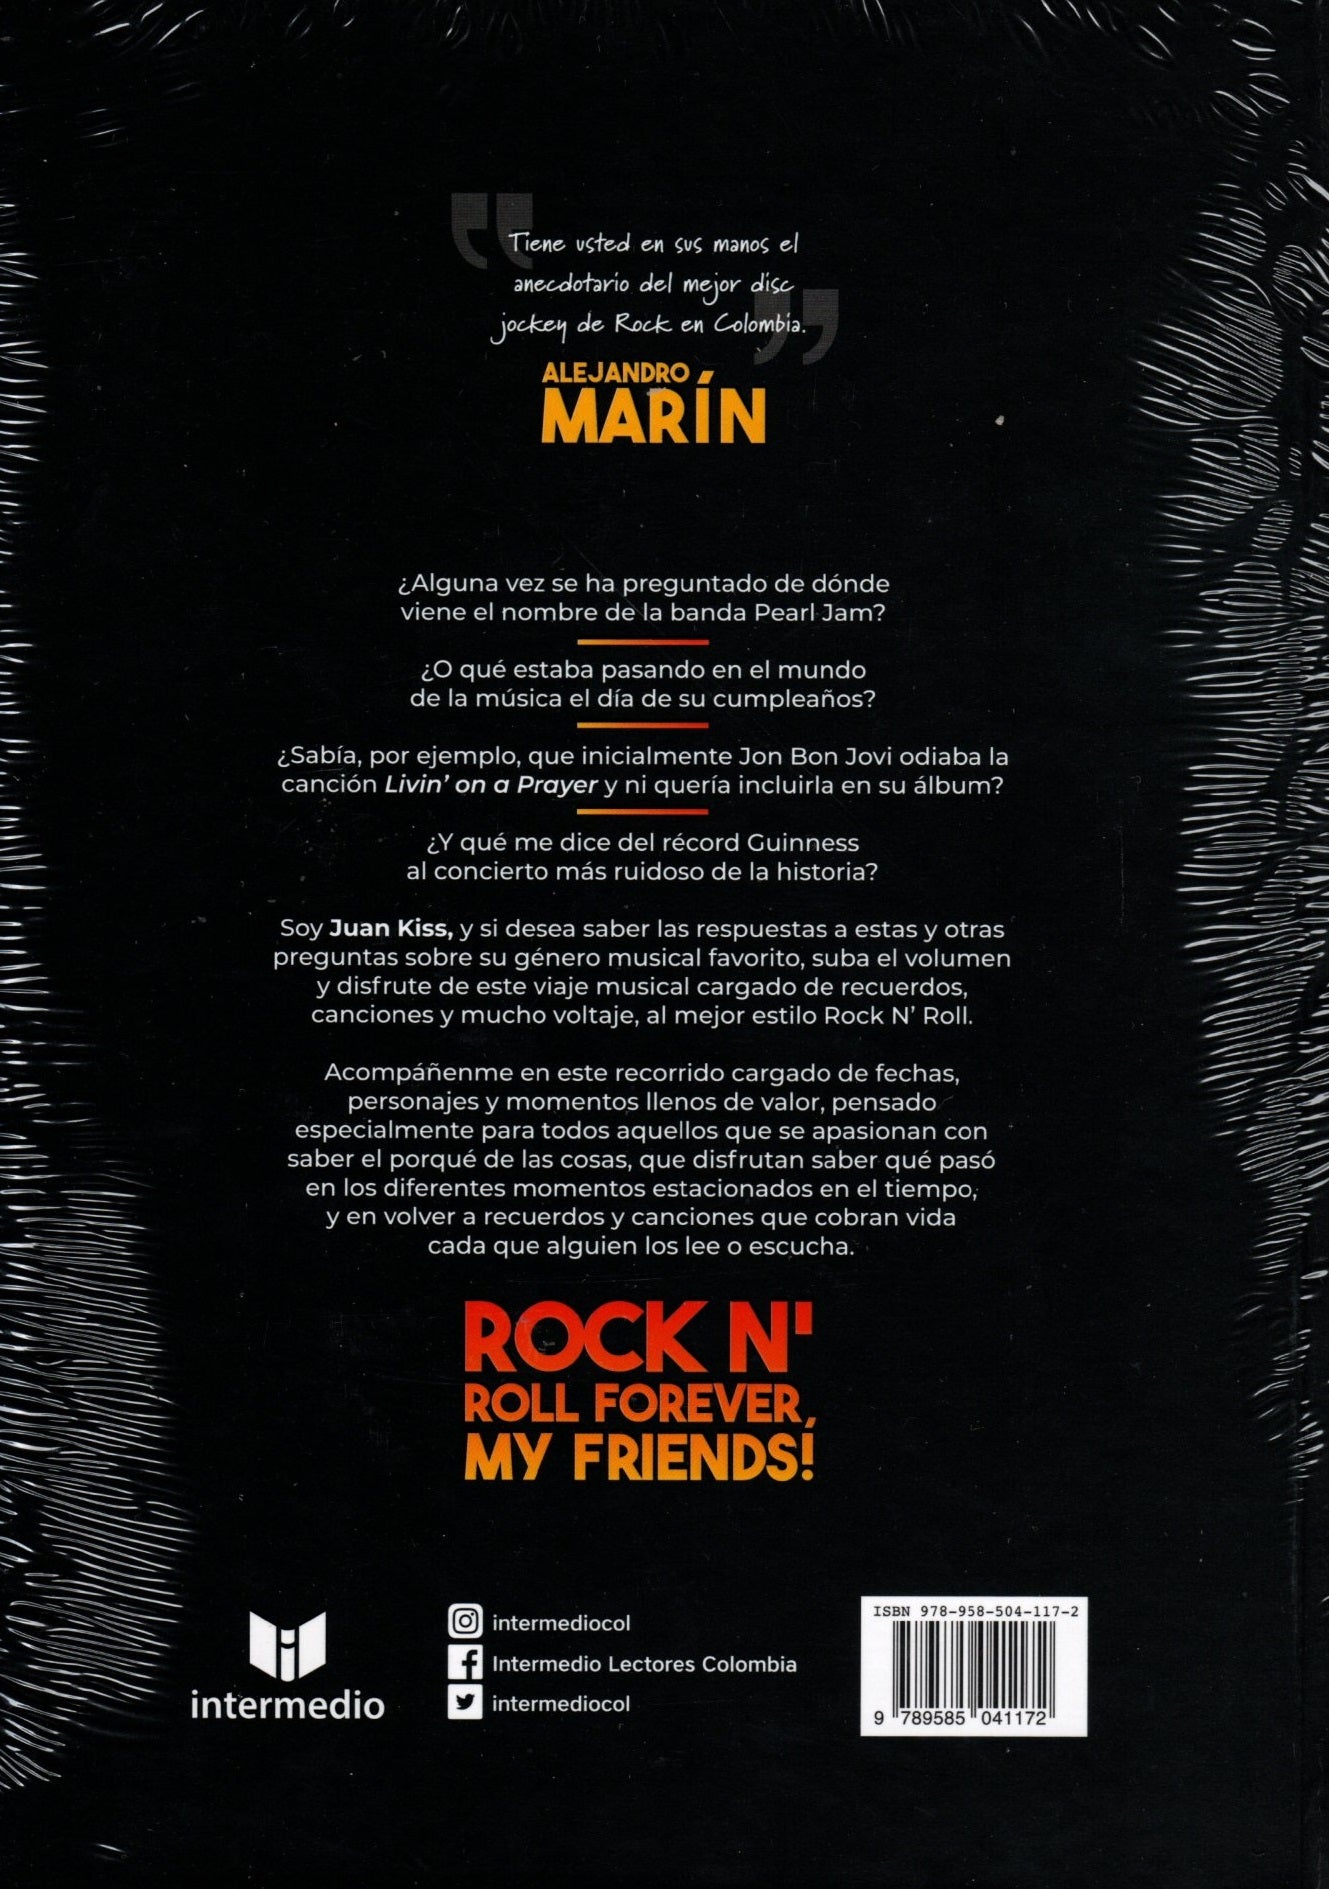 Libro Juan Kiss - 365 Días De Rock